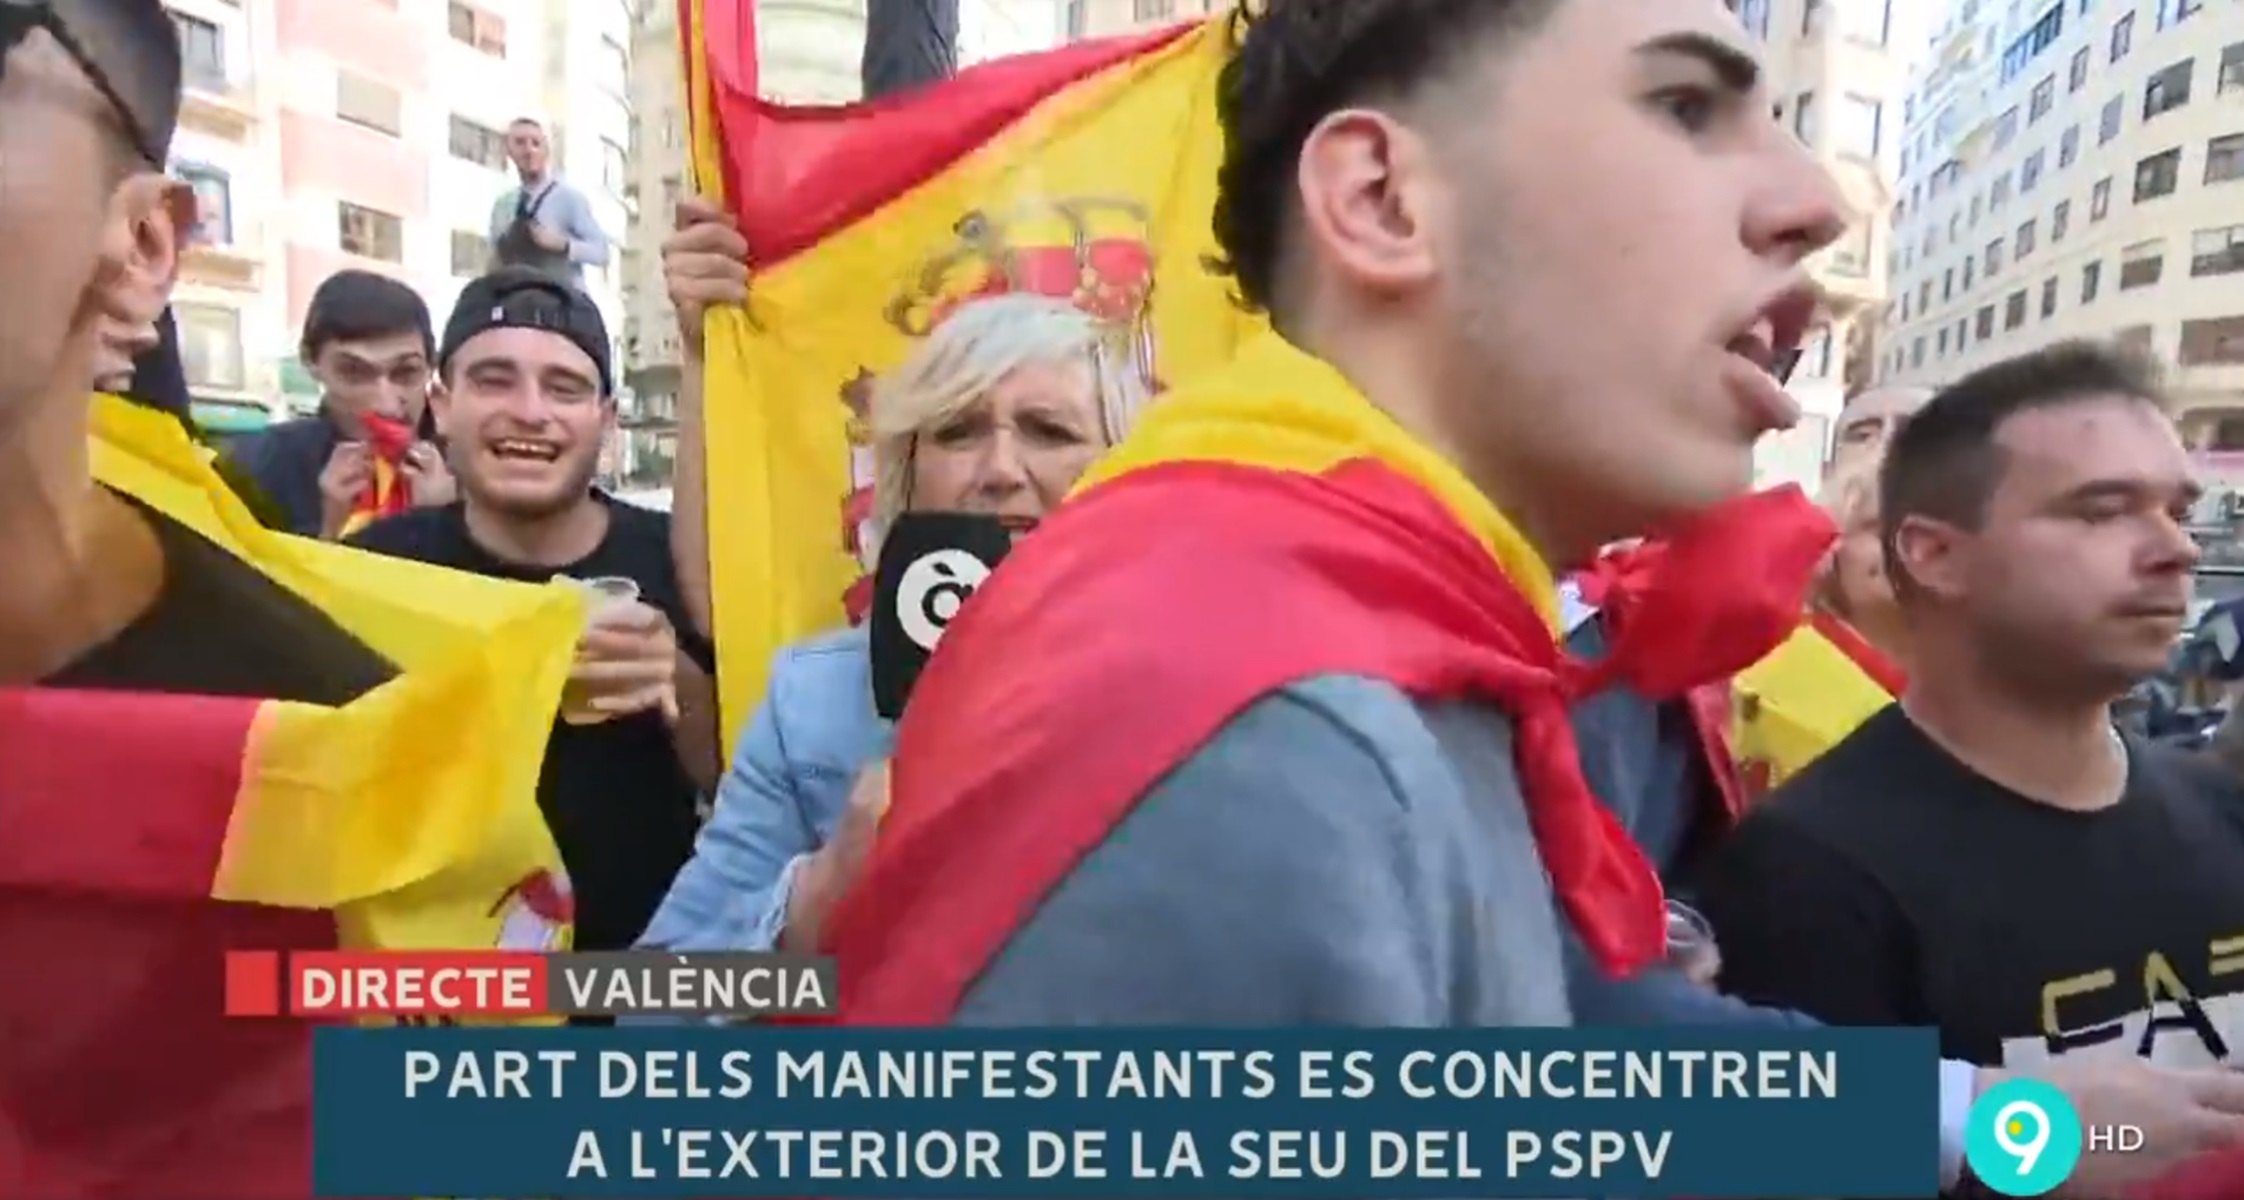 Agredeixen una periodista en directe a una manifestació espanyolista a València | VÍDEO